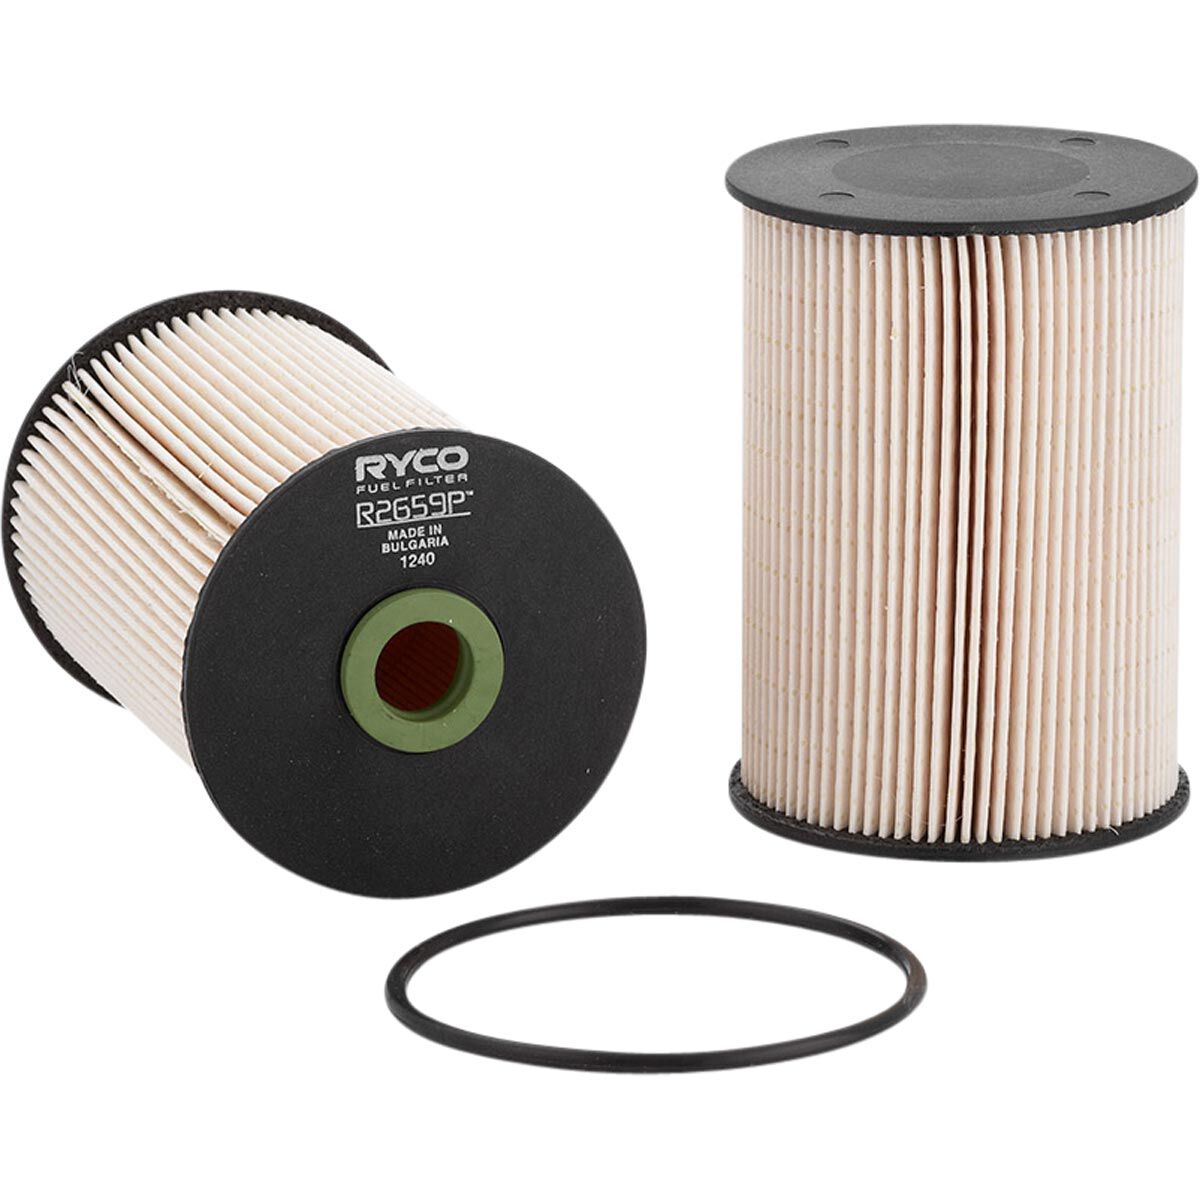 Ryco Fuel Filter - R2659P, , scaau_hi-res